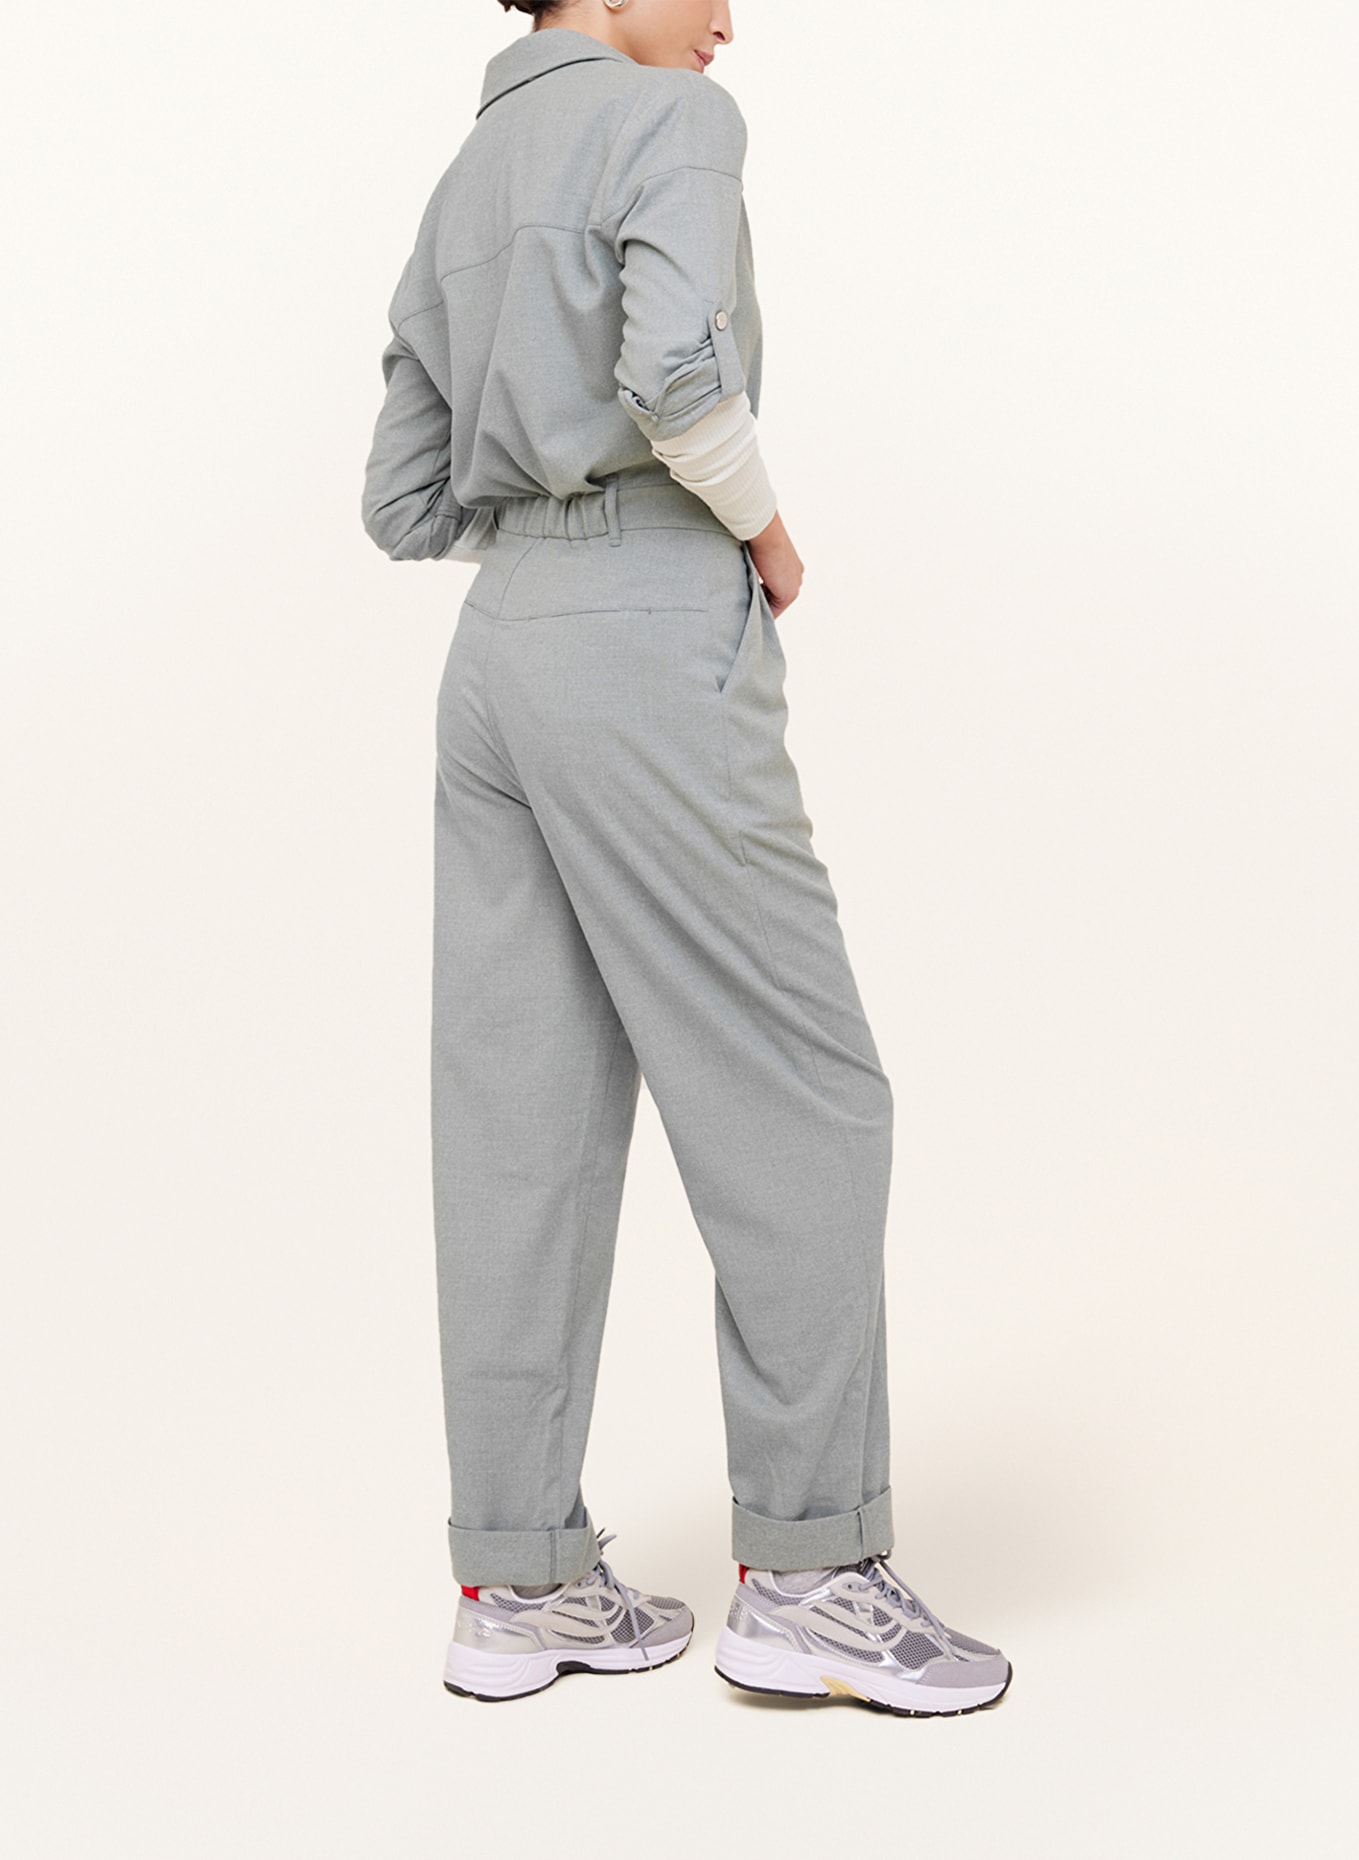 VANILIA Flannel jumpsuit, Color: GRAY (Image 3)